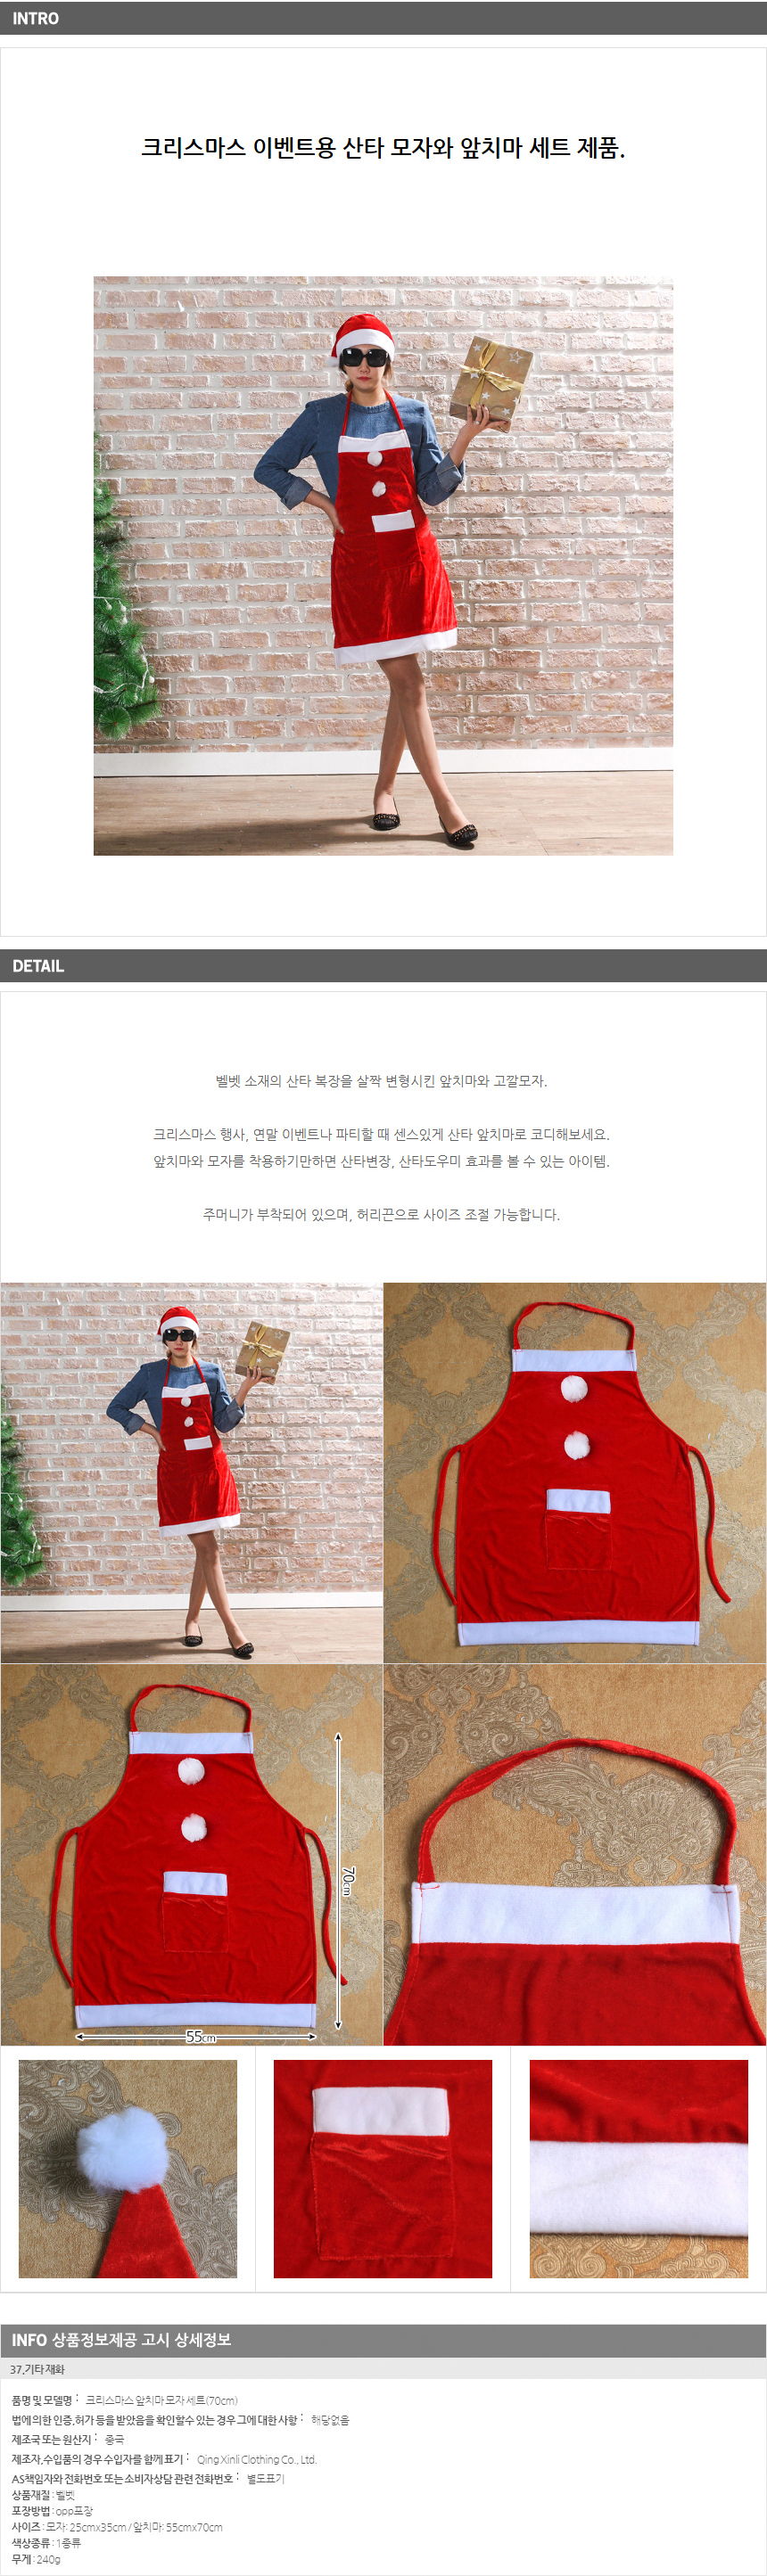 앞치마 모자 세트(70cm) / 크리스마스 장식 소품